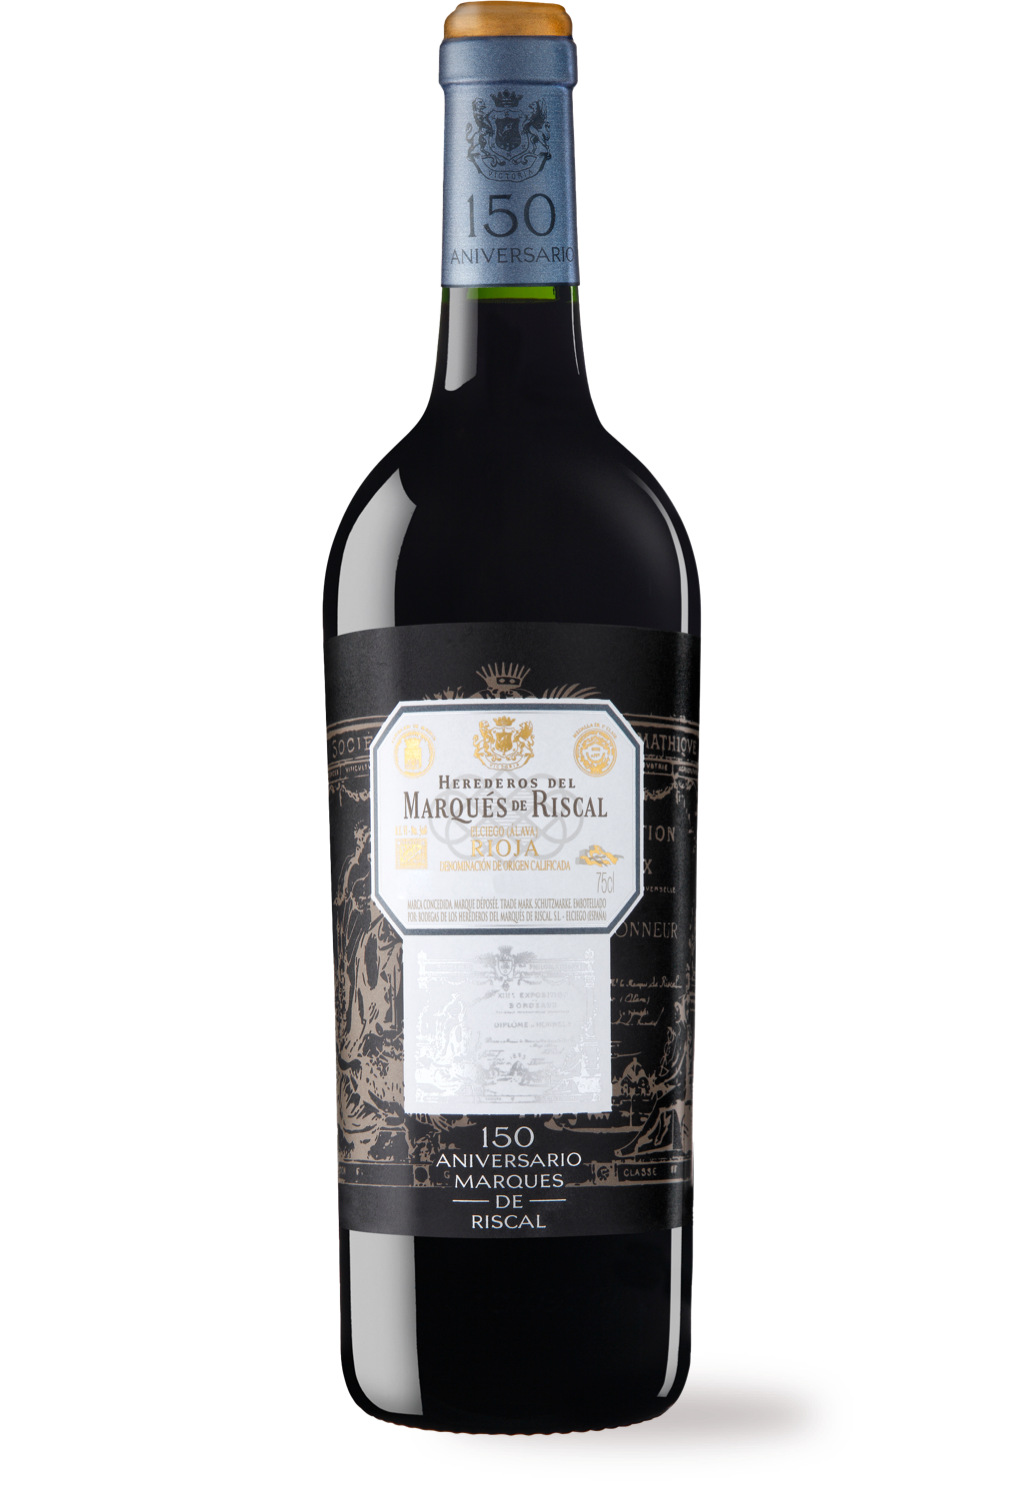 Botella de vino tinto Rioja Marqués de Riscal 150 Aniversario 